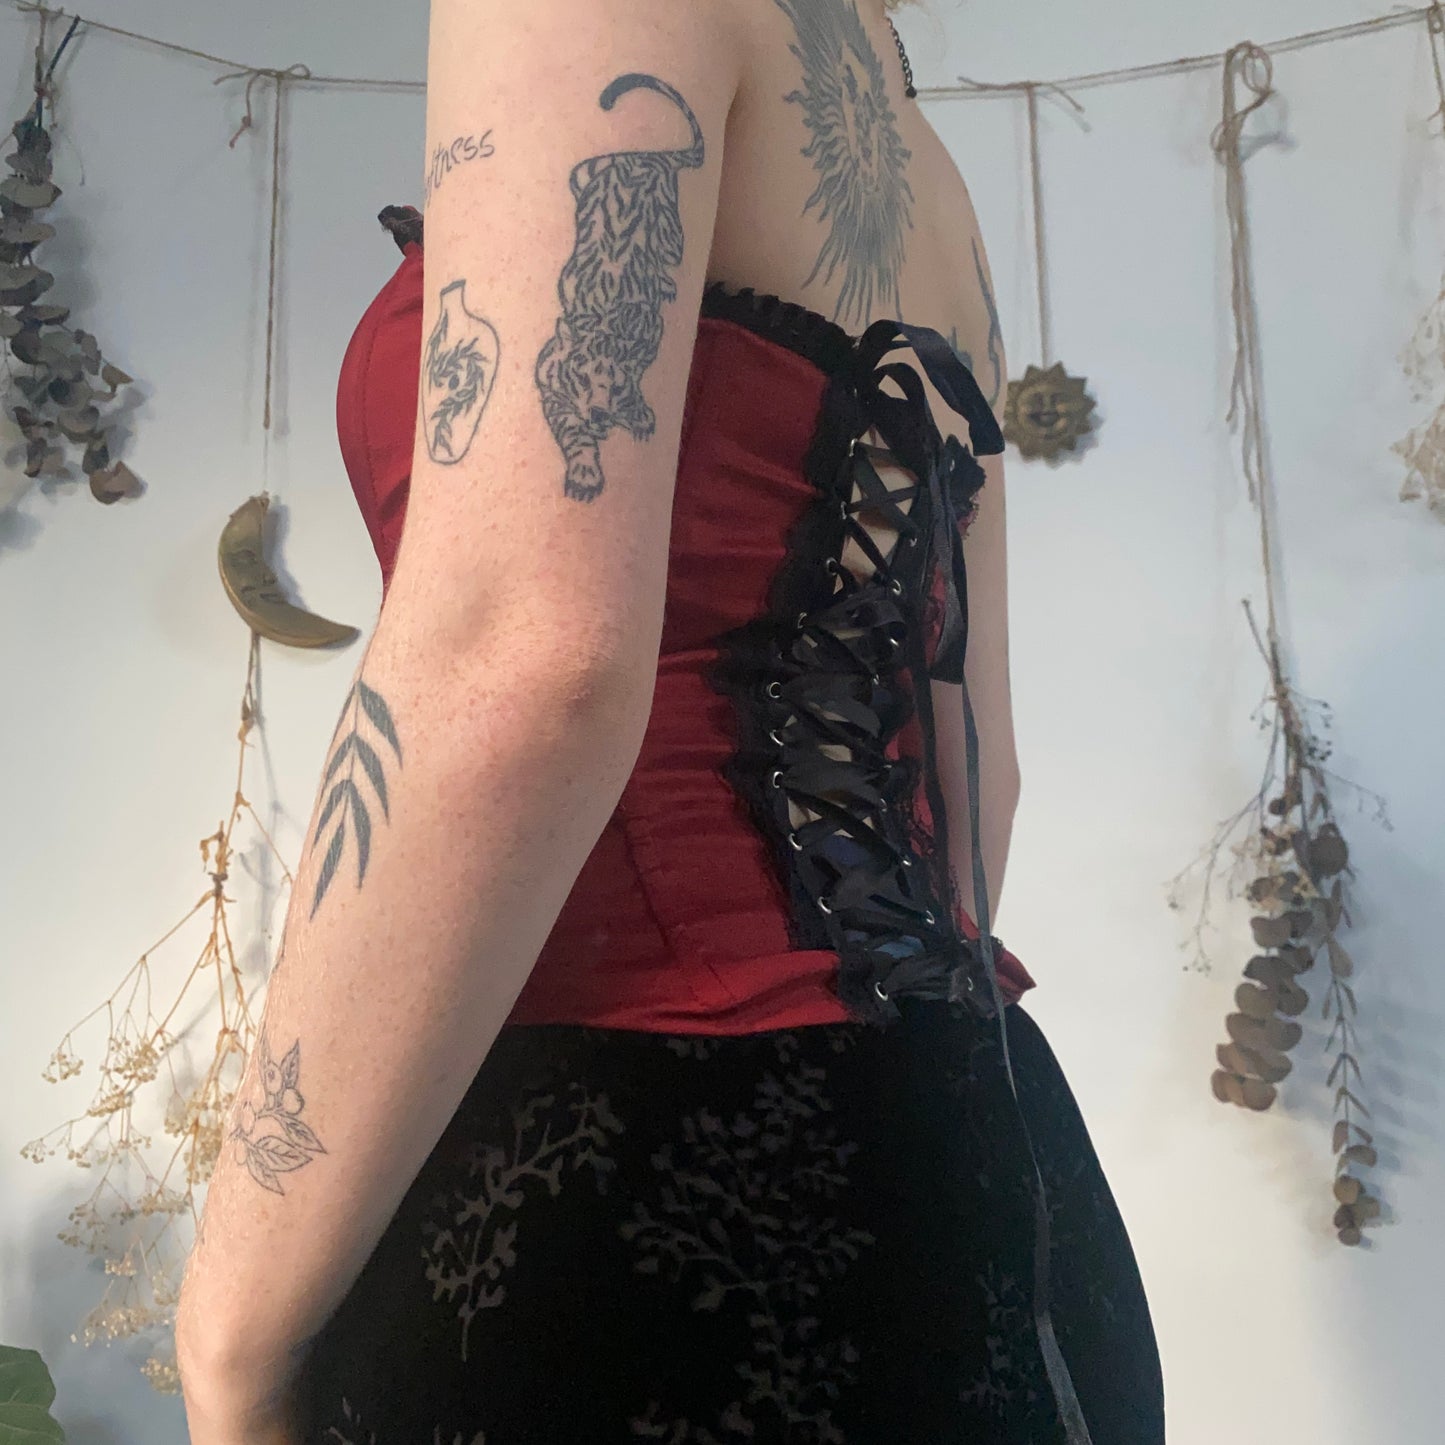 Red zip corset - size S